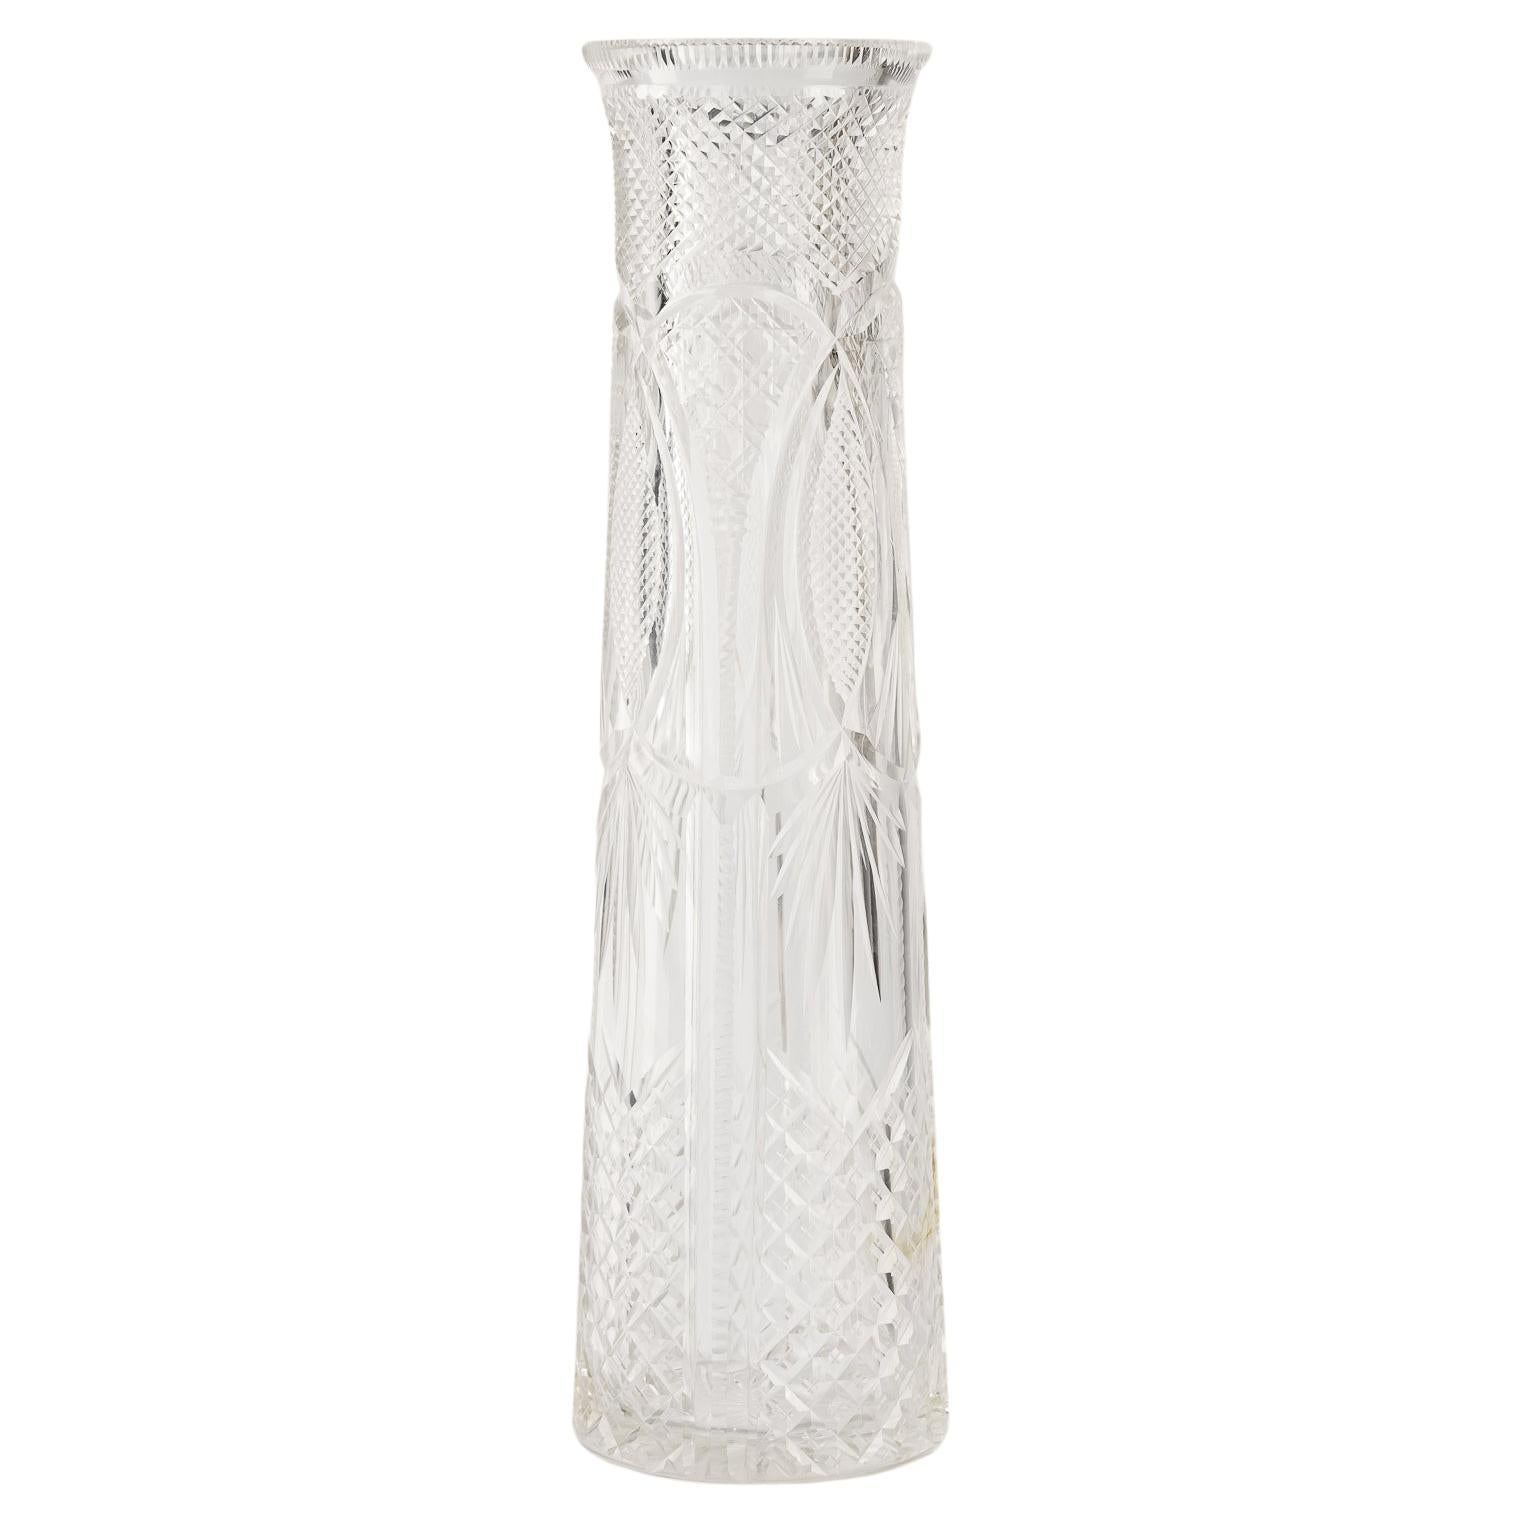 Art Deco crystal vase vienna around 1930s